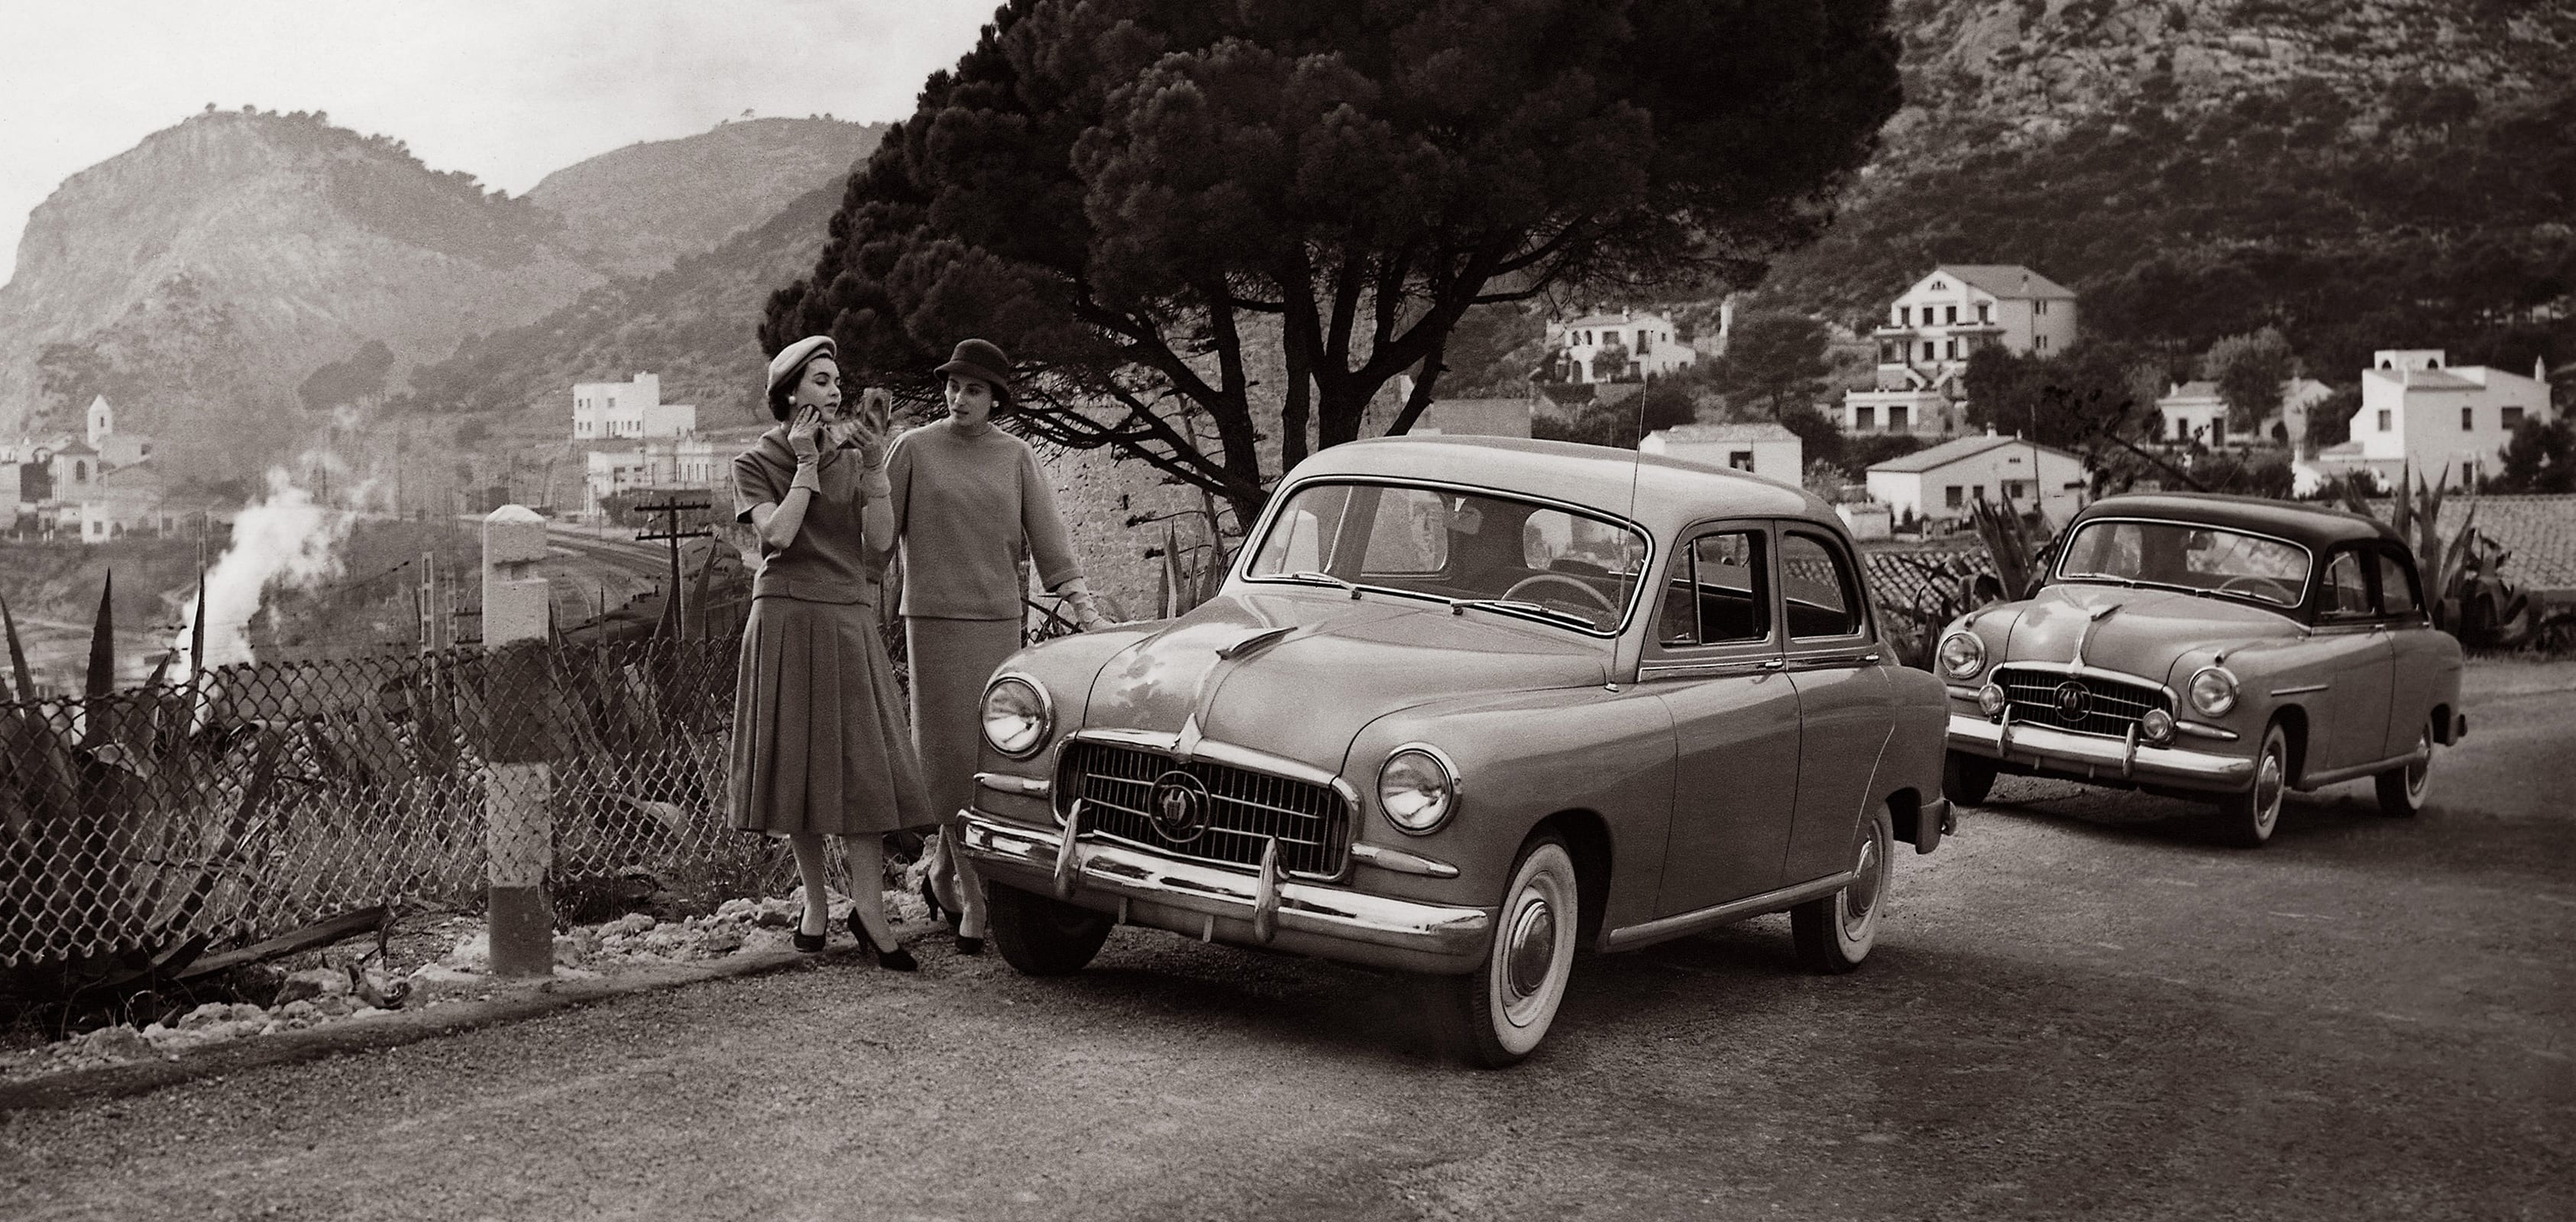 Histoire de la marque SEAT dans les années 1950 - SEAT 600 en noir et blanc à la campagne photo noir et blanc